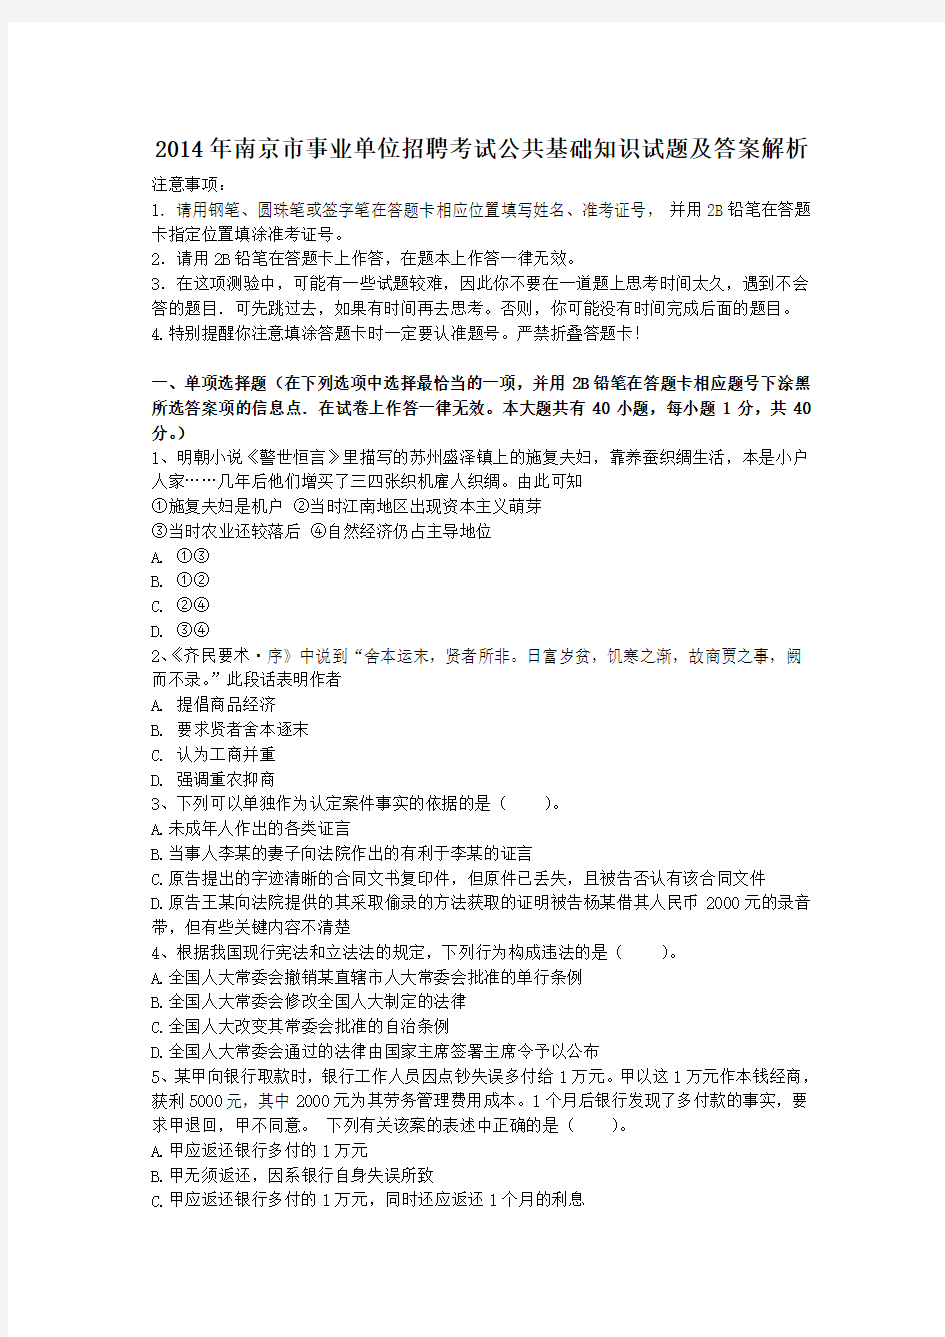 2014年南京市事业单位招聘考试公共基础知识试题及答案解析